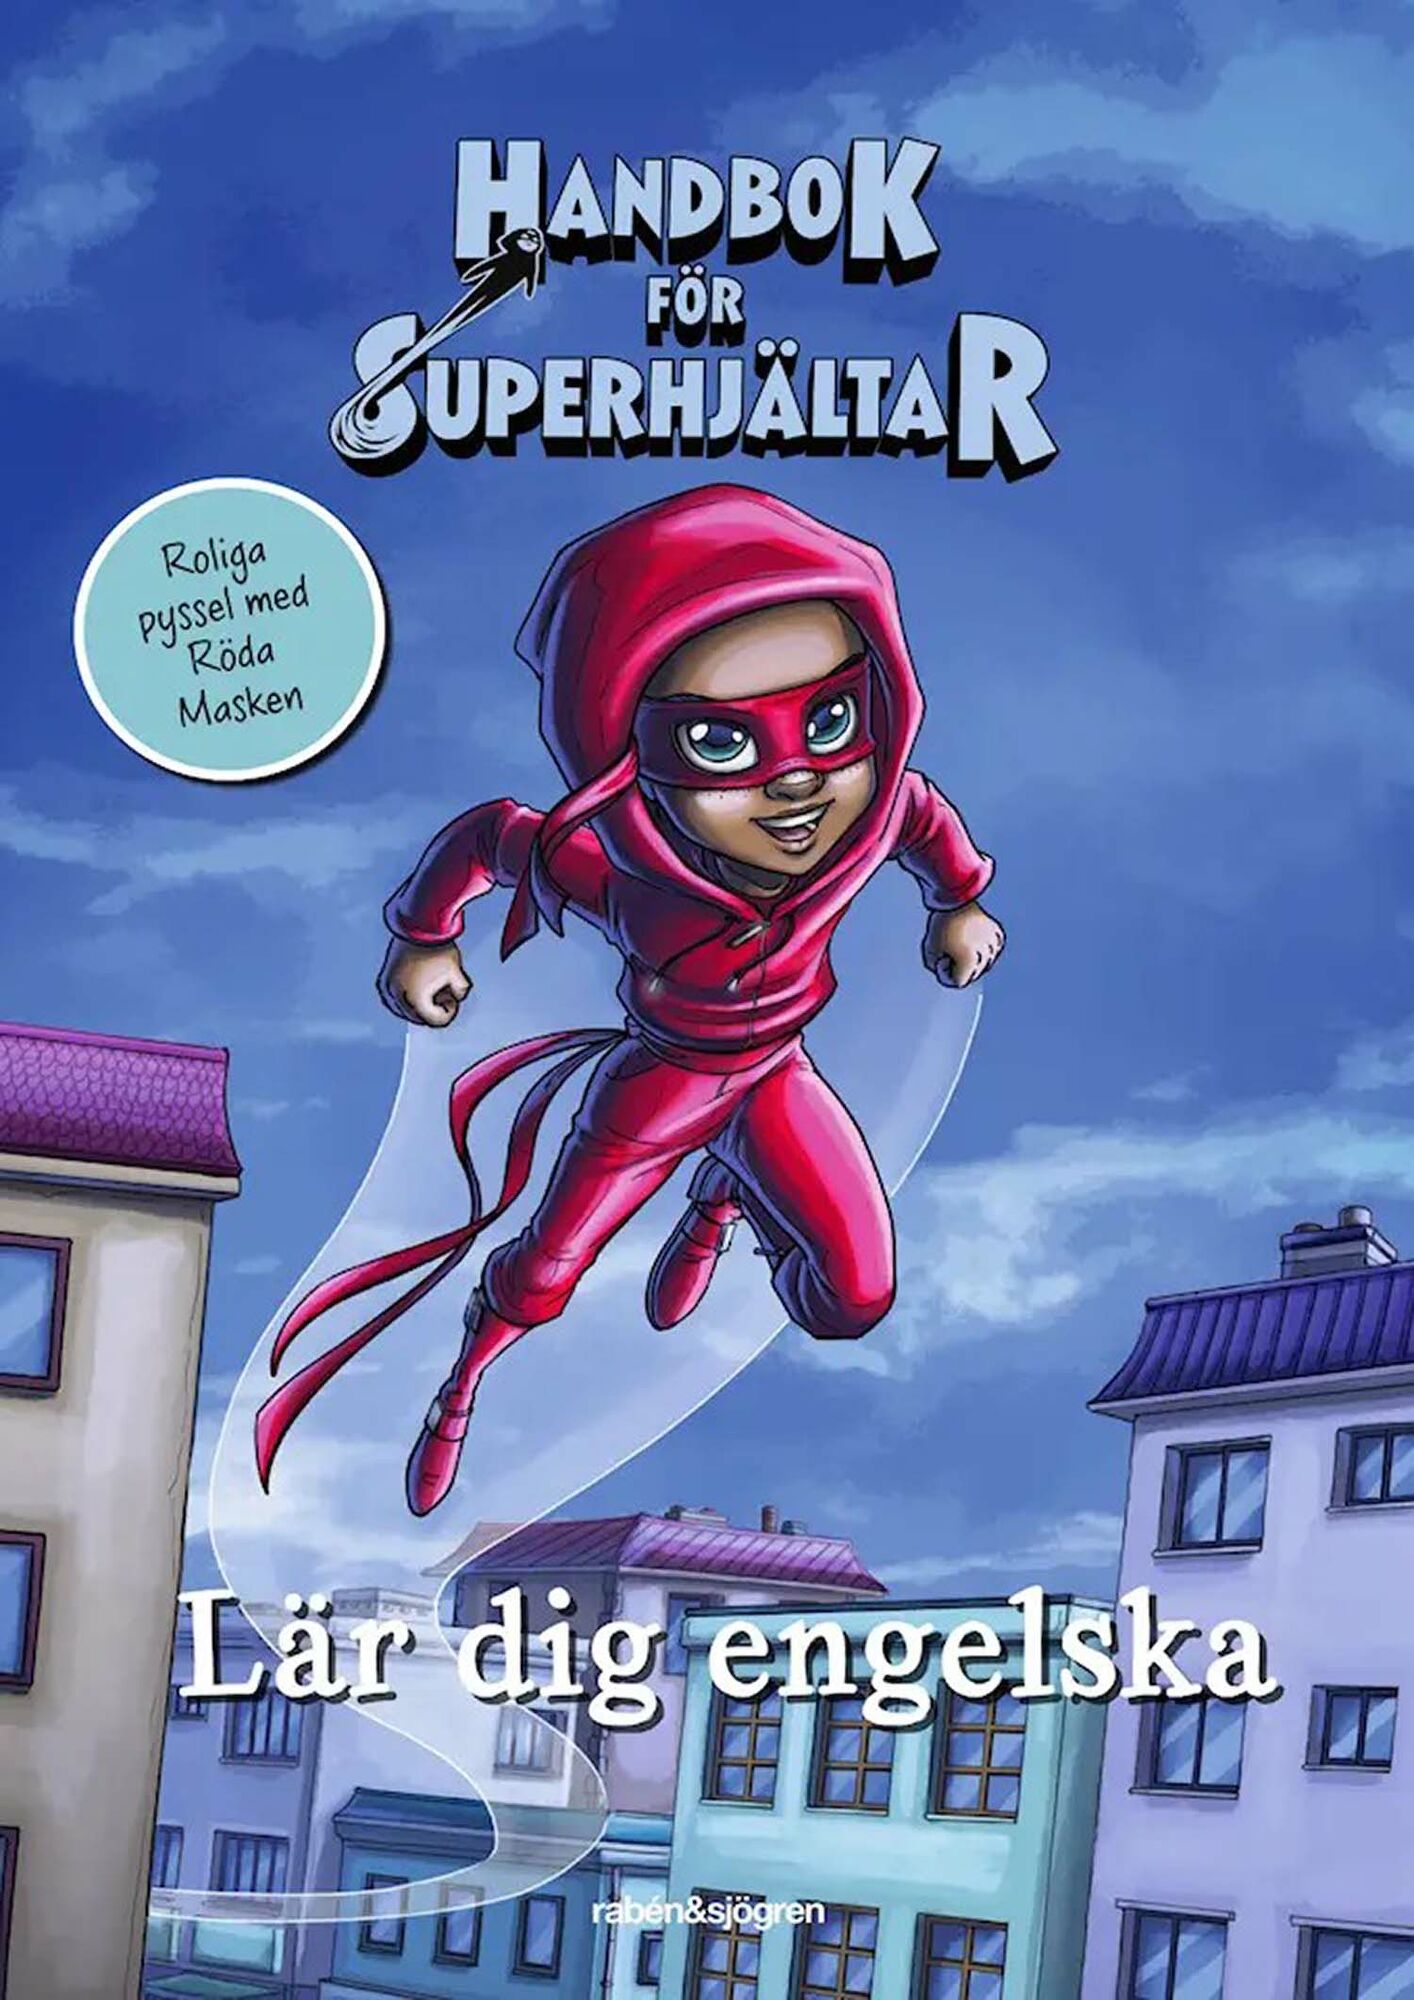 Handbok för superhjältar lär engelska